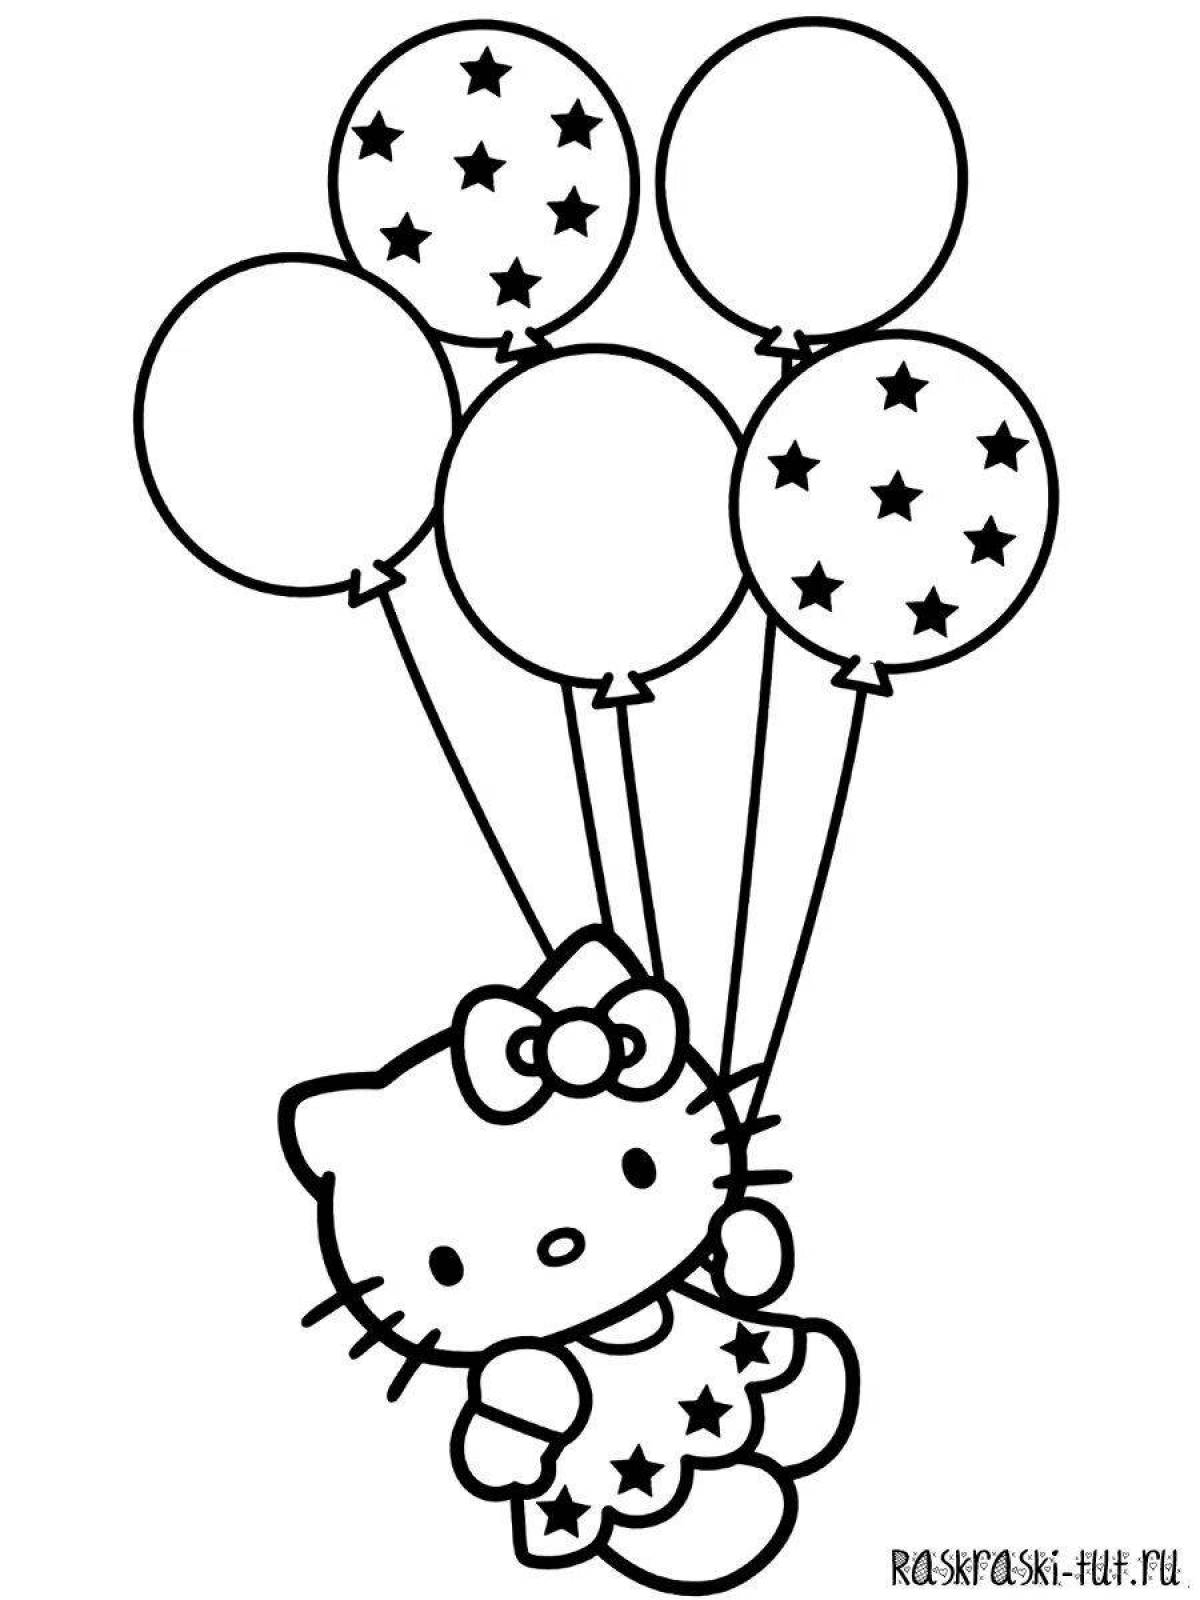 Сказочные воздушные шары раскраски для детей 2-3 лет